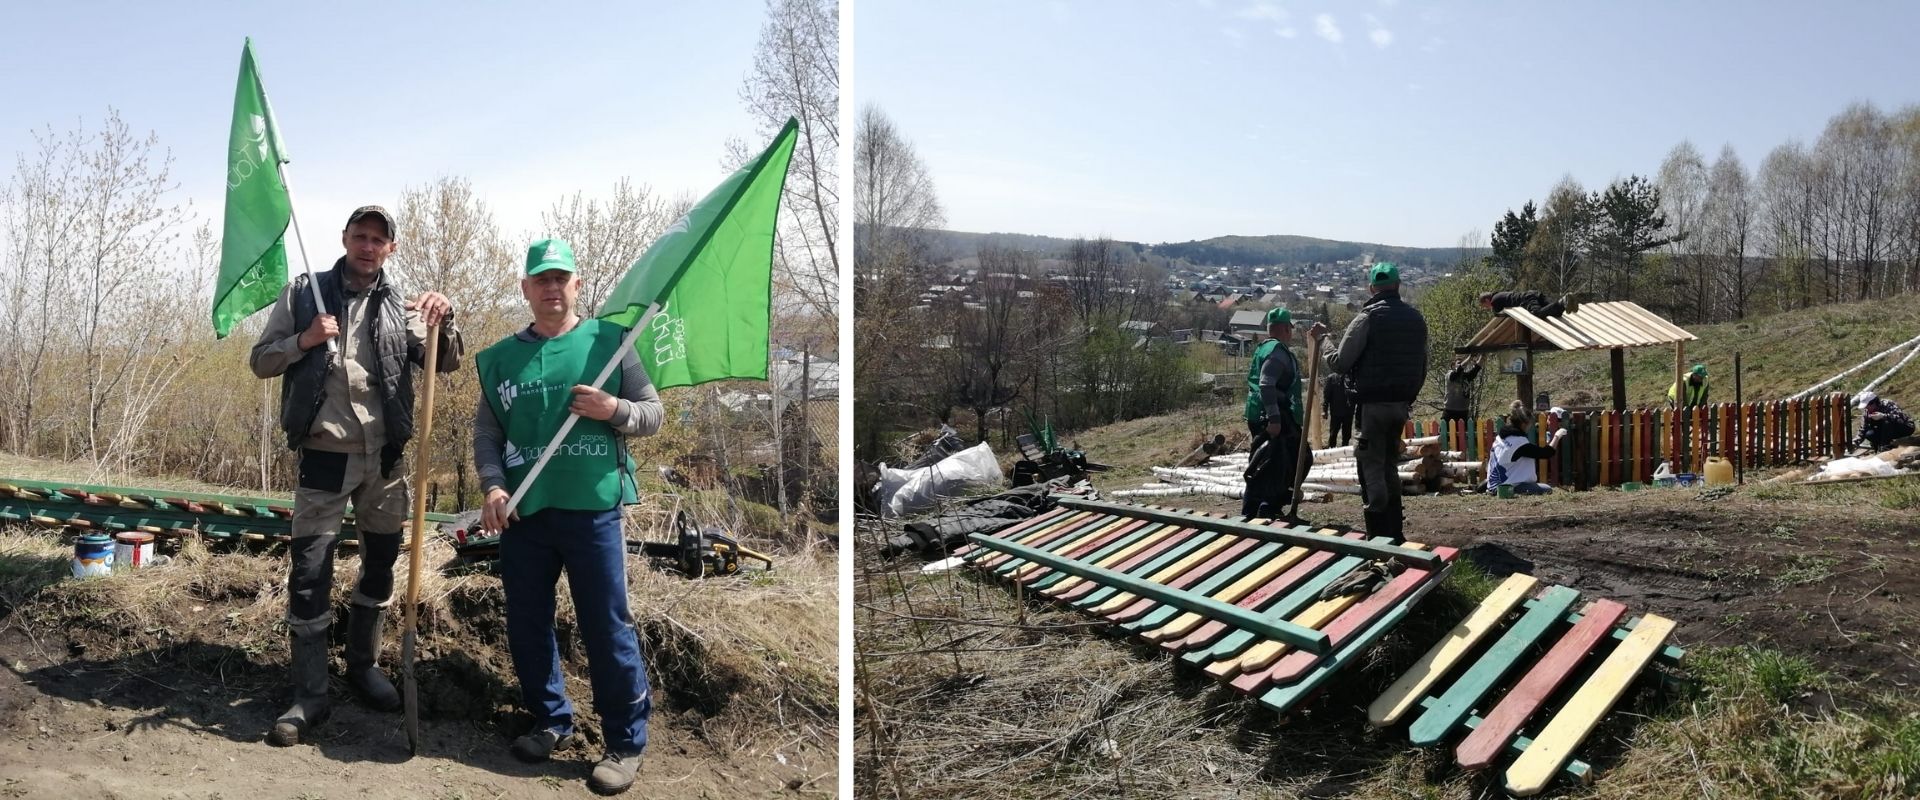 Сотрудники разреза приняли участие в ежегодной Кузбасской областной экологической акции "Живи Родник" 